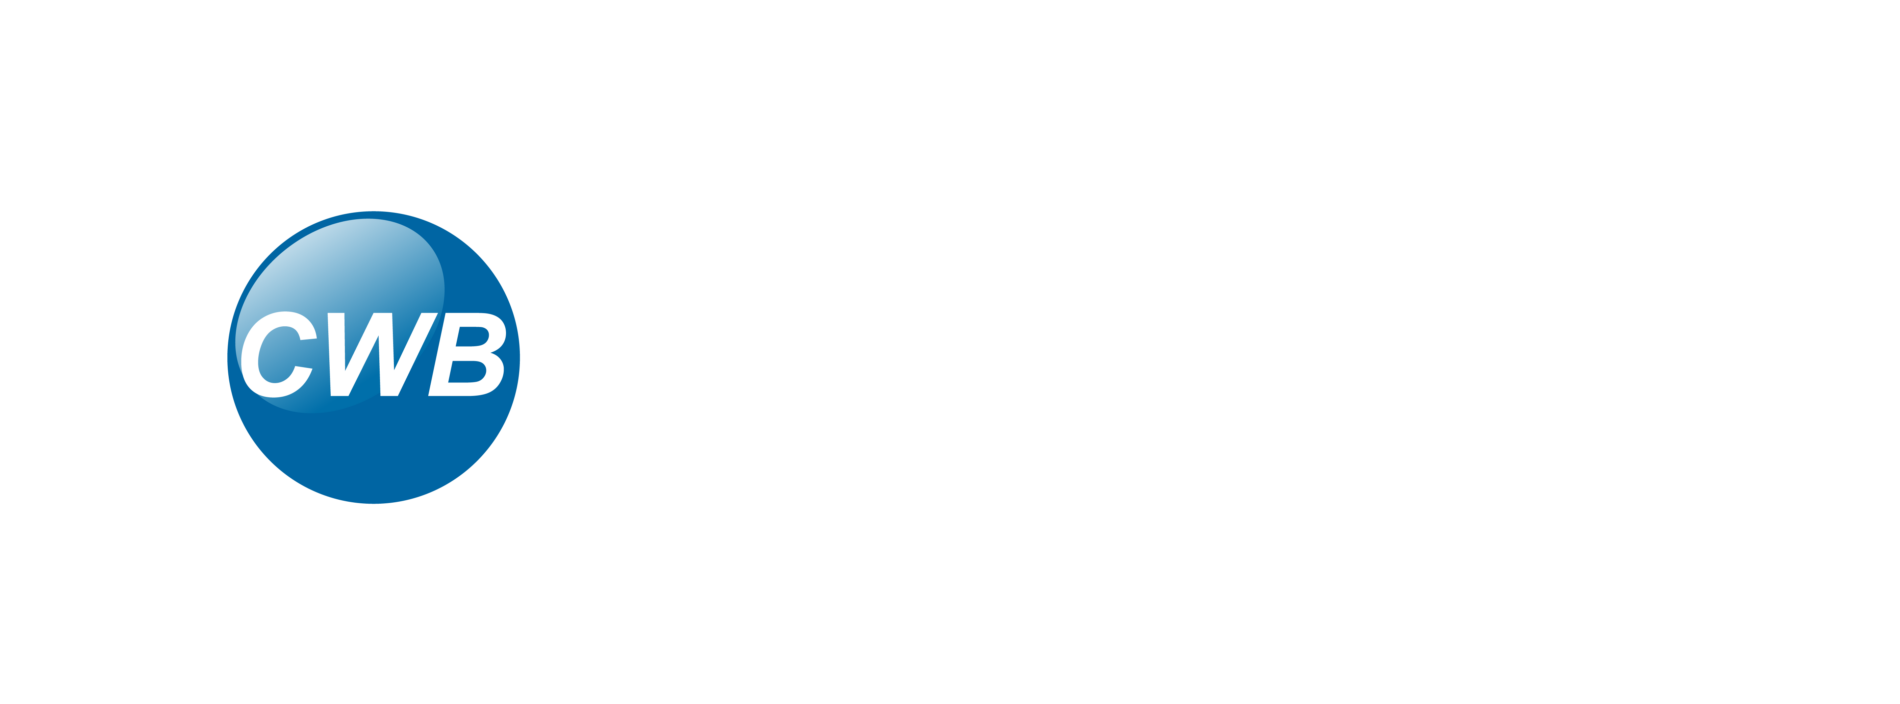 CWB foundation logo